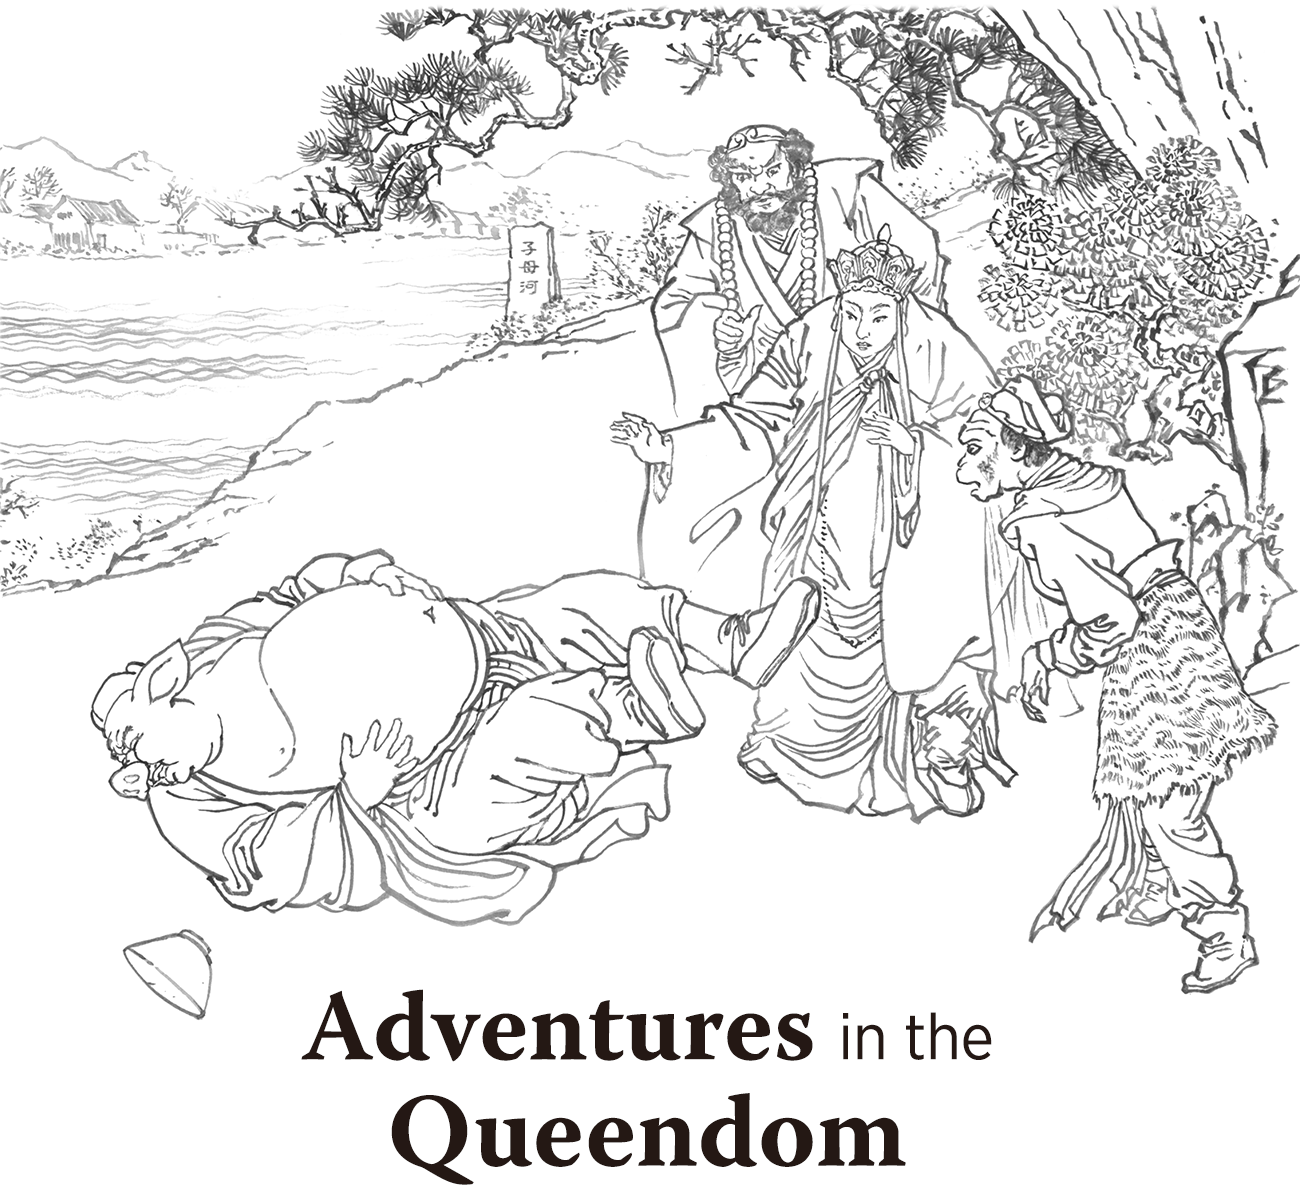 Adventures in the Queendom